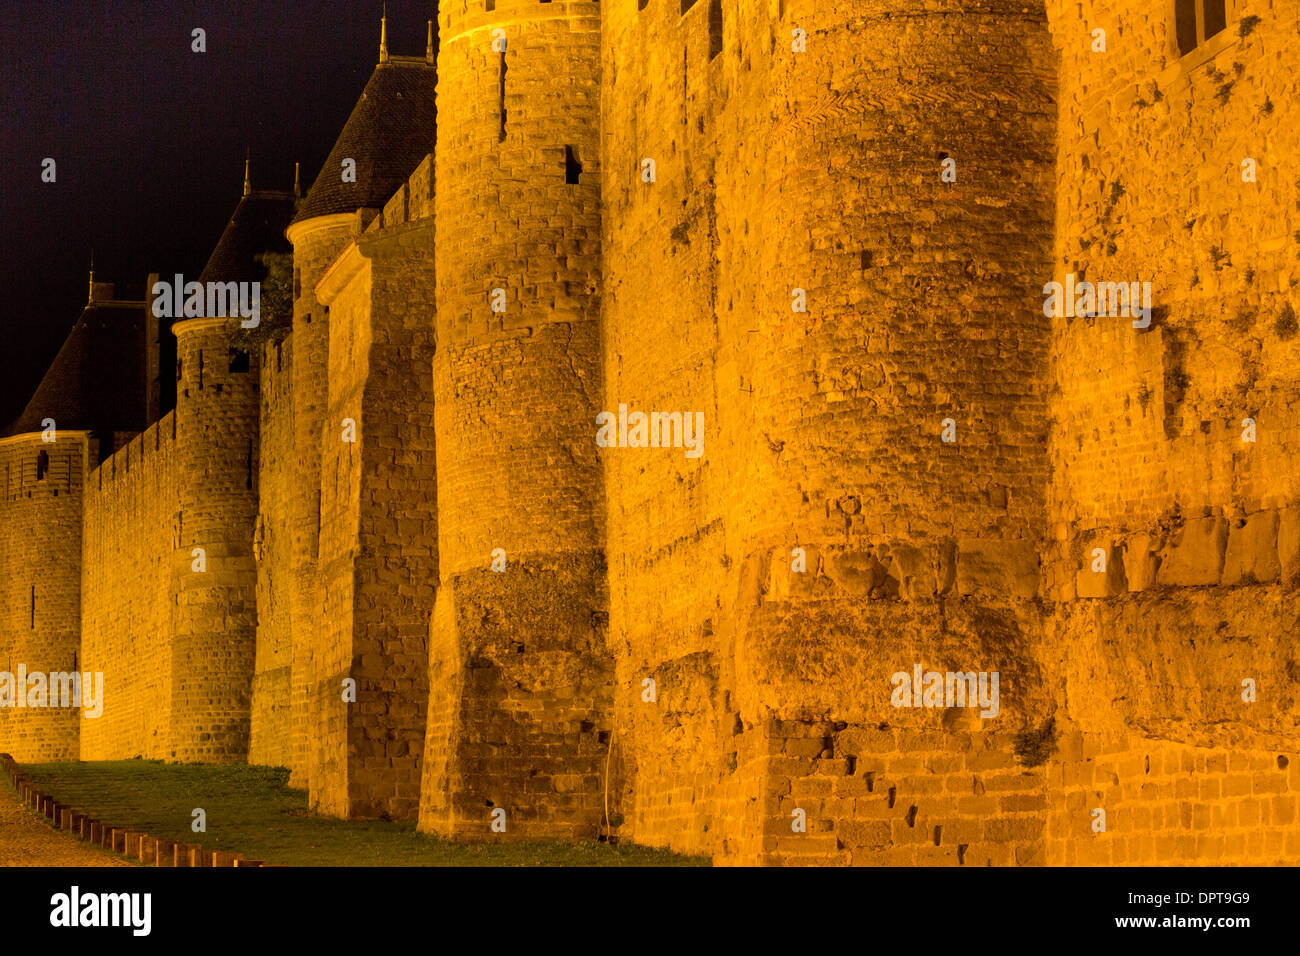 Les fortifications médiévales de l'ancienne citadelle de Carcassonne au sud-ouest de la France Banque D'Images